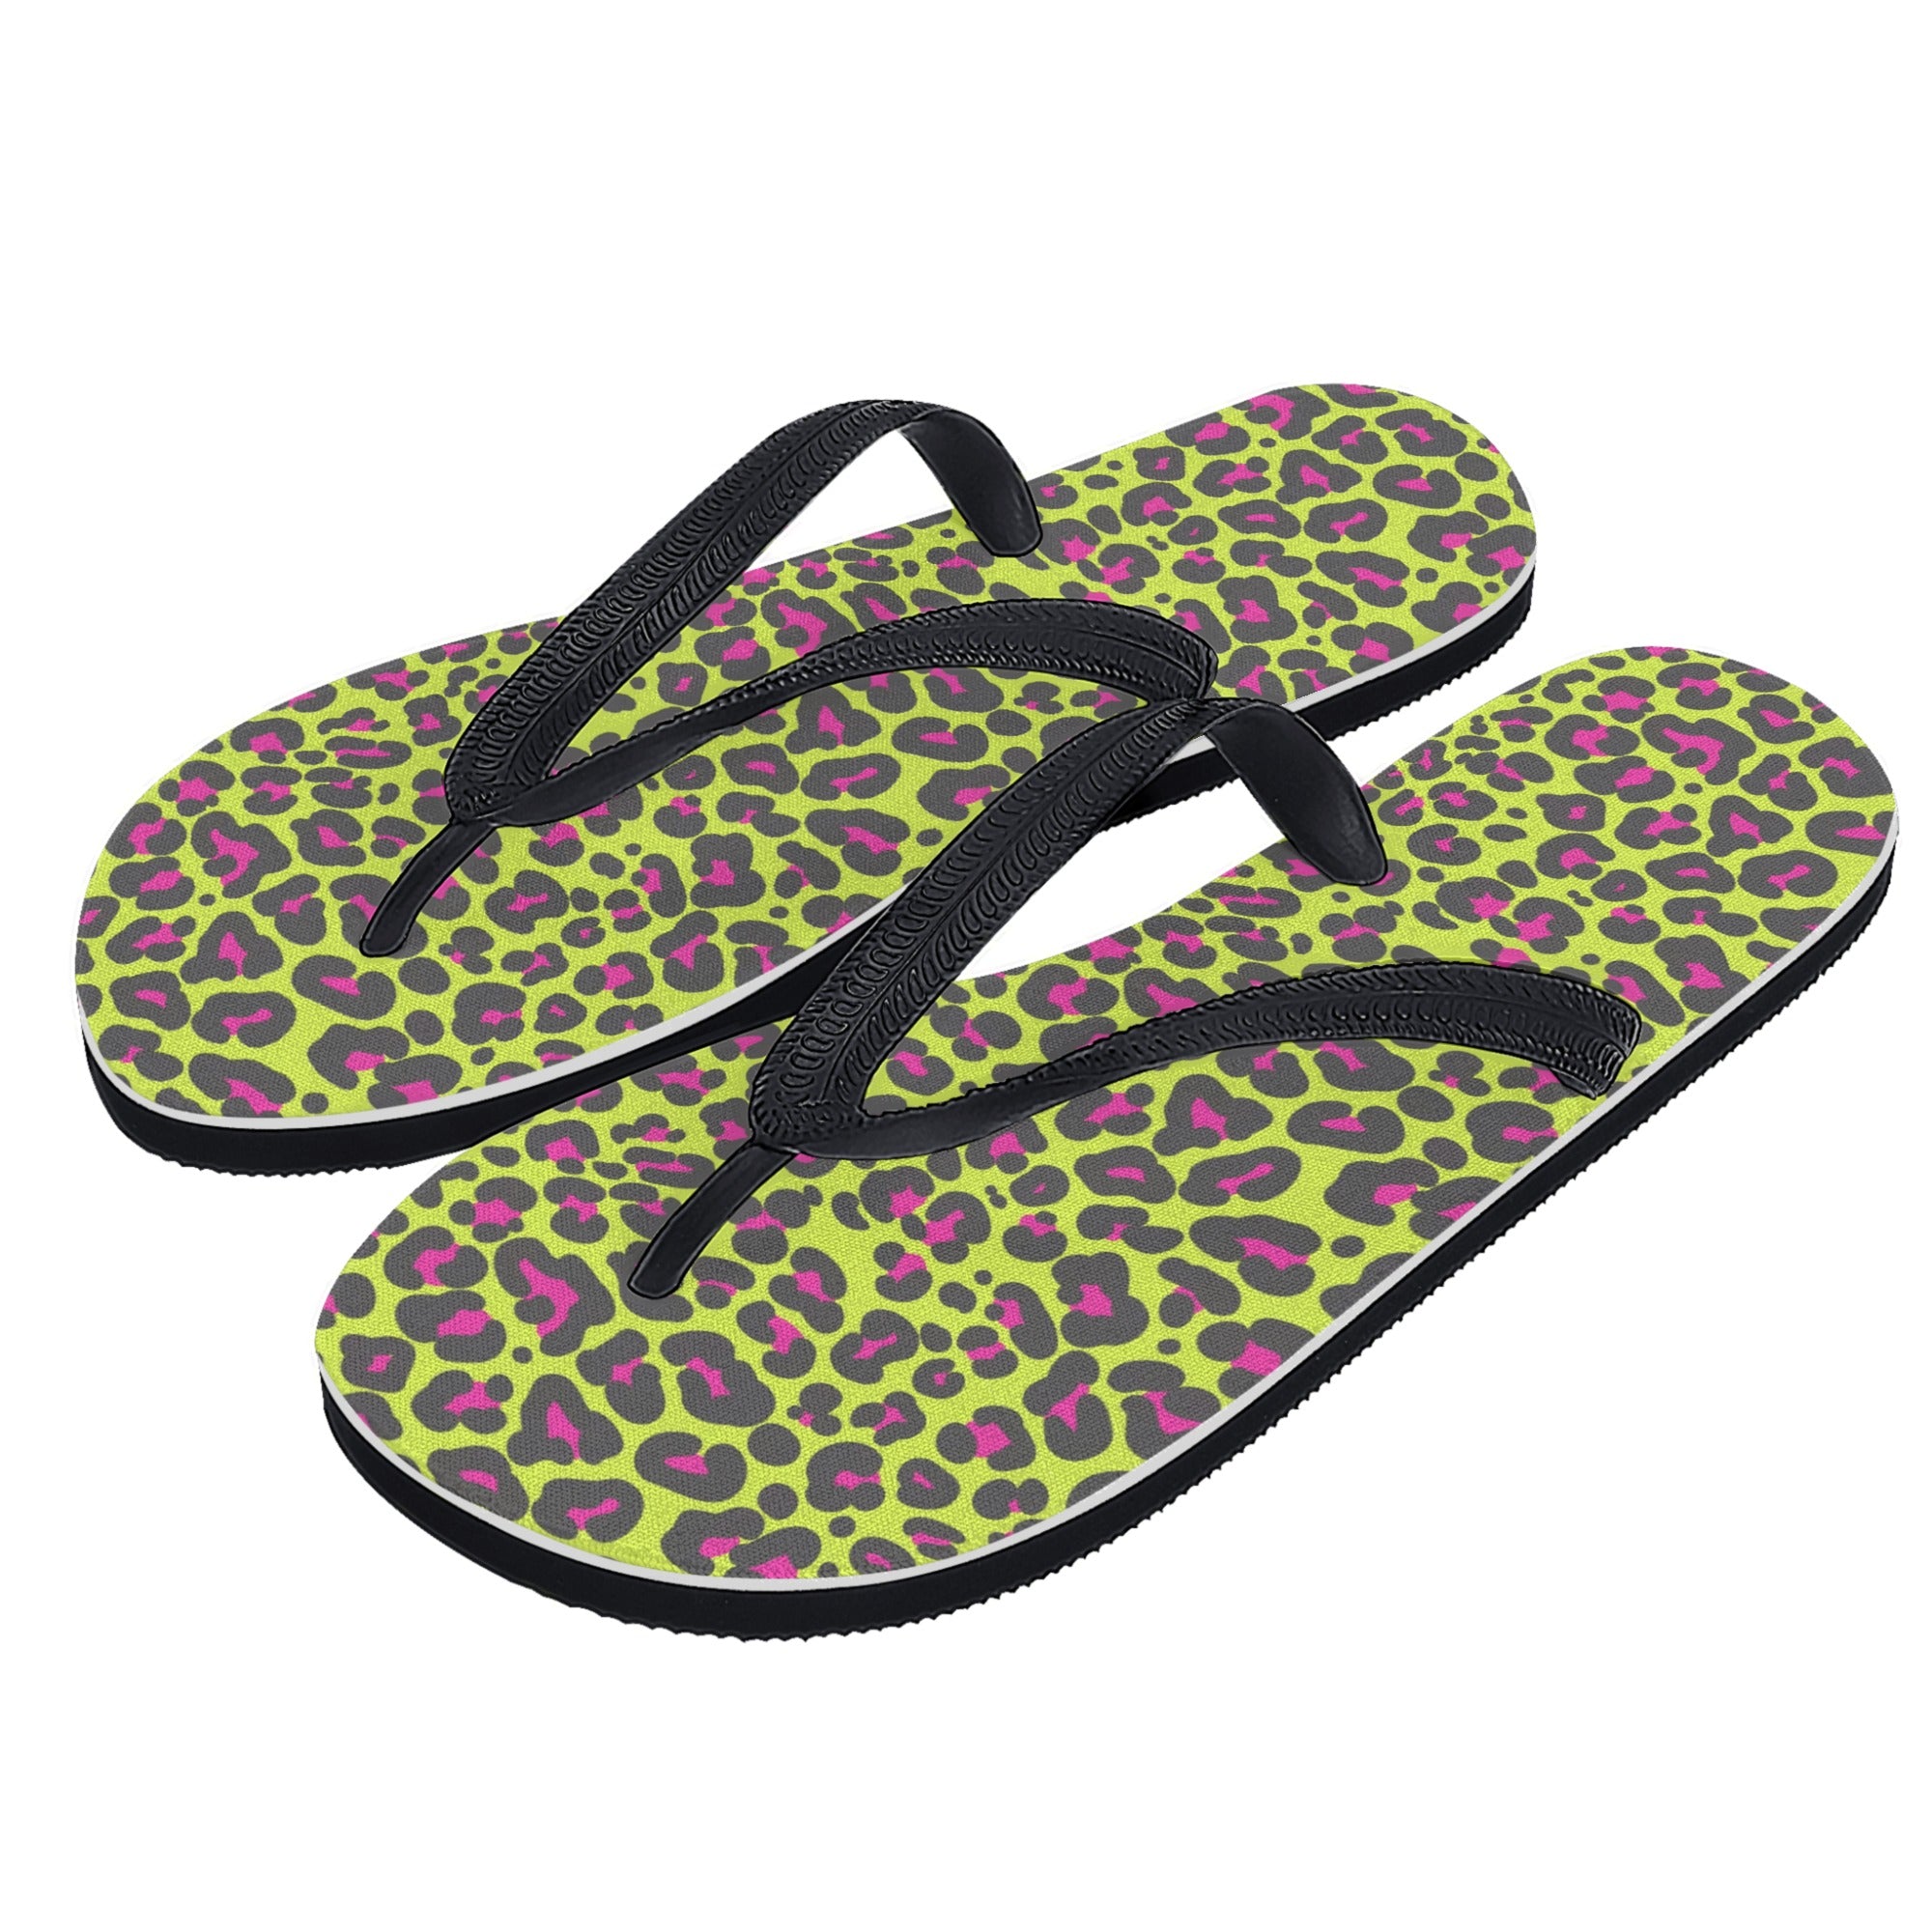 Womens Flip Flops - Neon Leopard